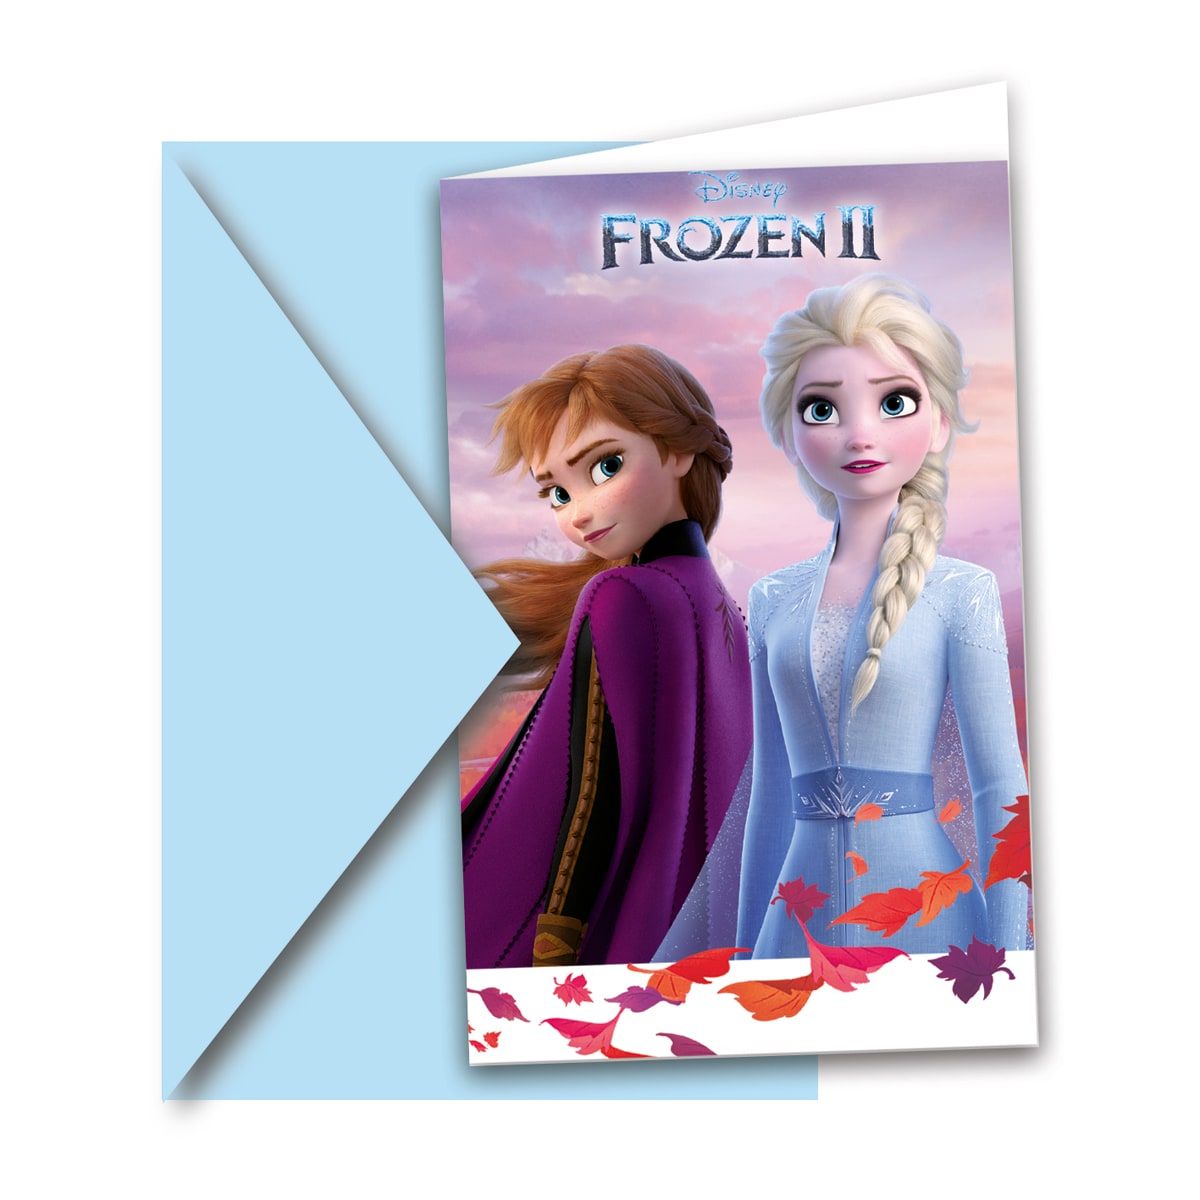 6 Frozen 2 kinderfeestje uitnodigingen